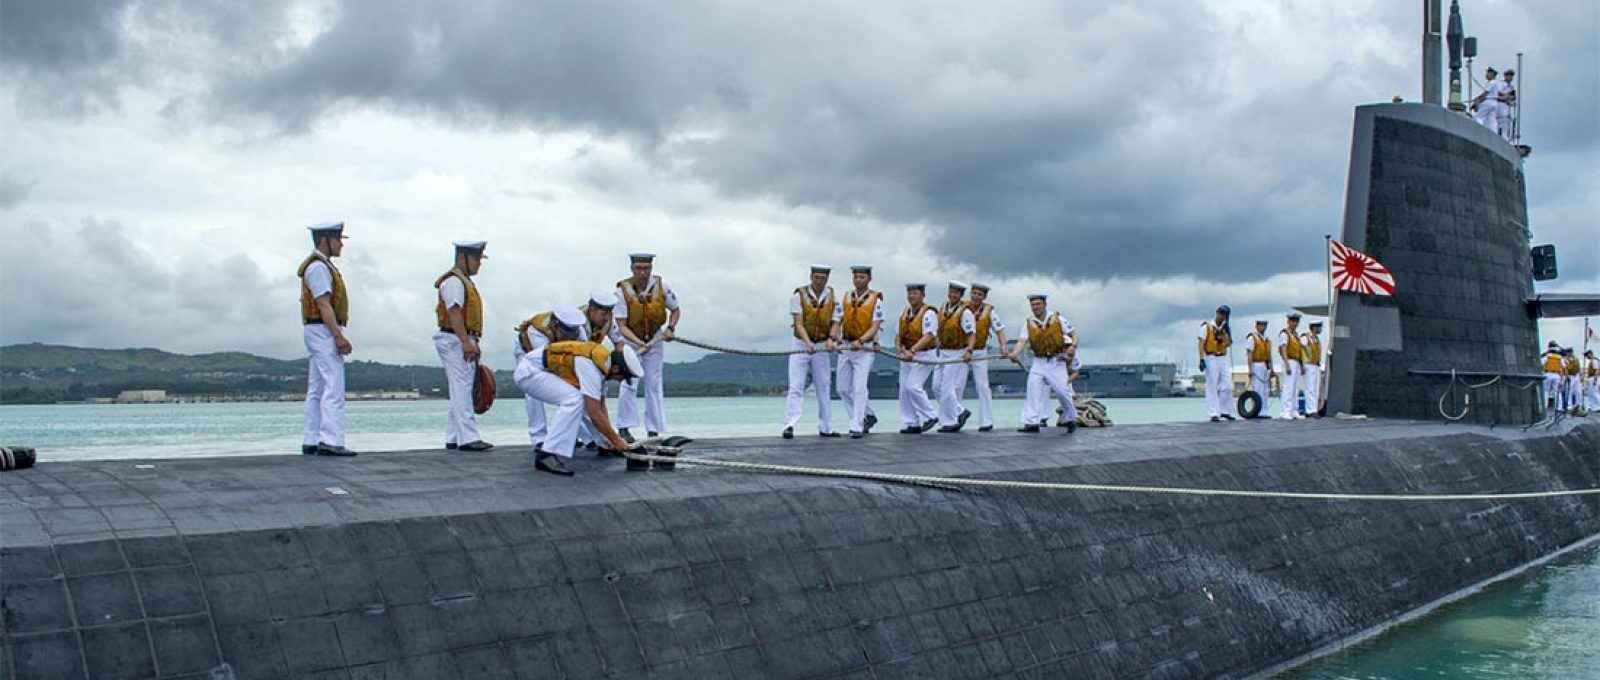 O submarino JS Soryu (SS-501) da Força de Autodefesa Marítima do Japão chega a Guam para uma visita ao porto (Foto: Lauren Spaziano/US Navy).